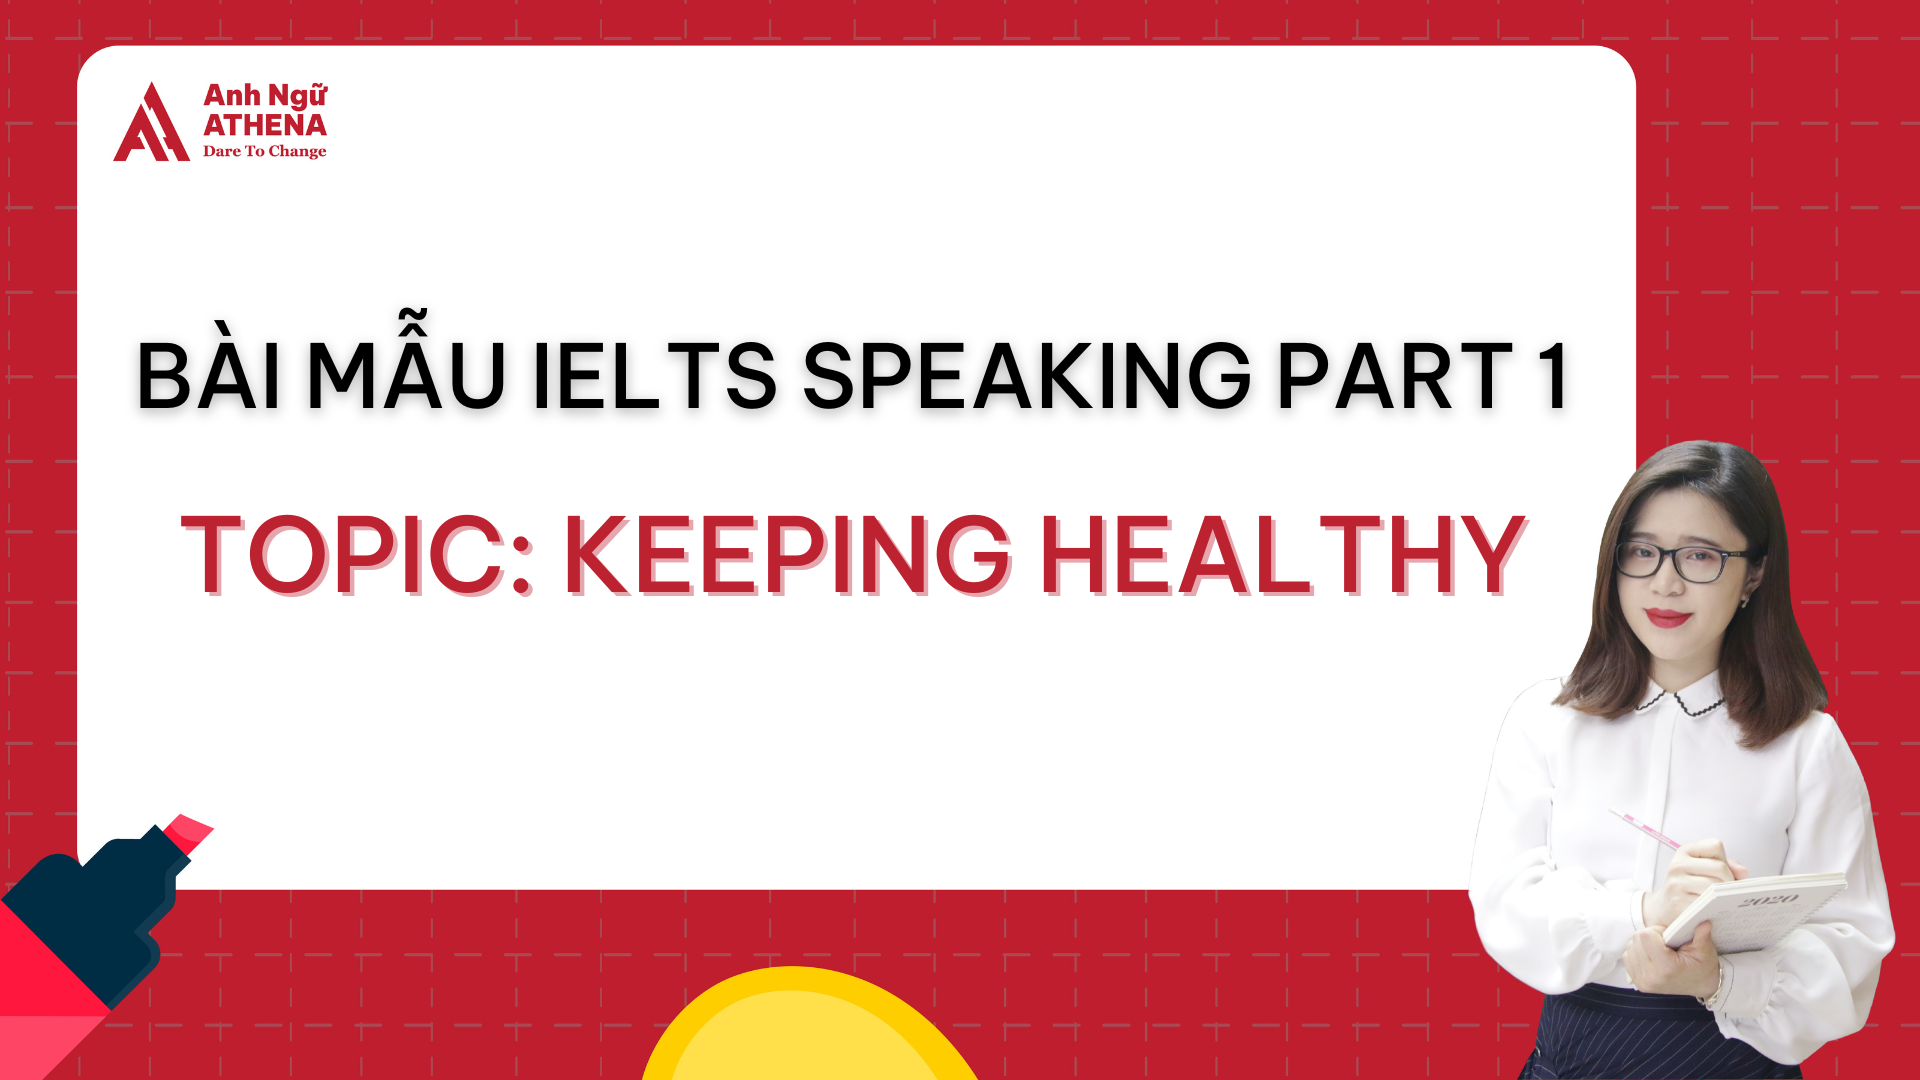 Bài mẫu IELTS Speaking Part 1 - Topic: Keeping healthy